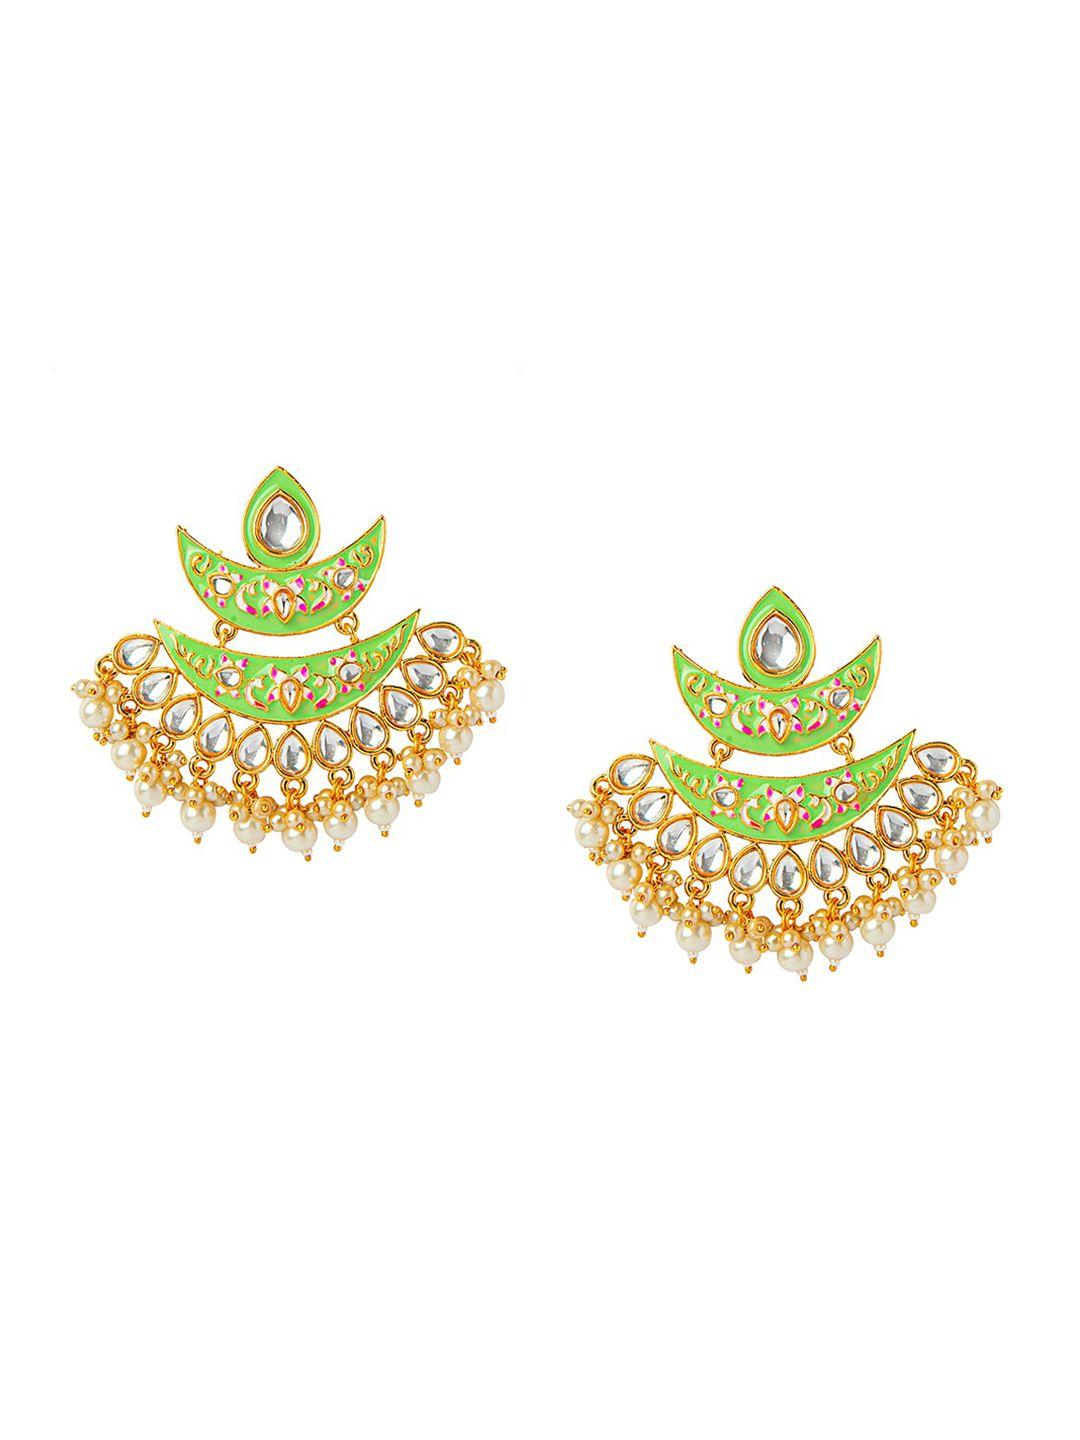 shining jewel - by shivansh gold-toned & green contemporary drop earrings